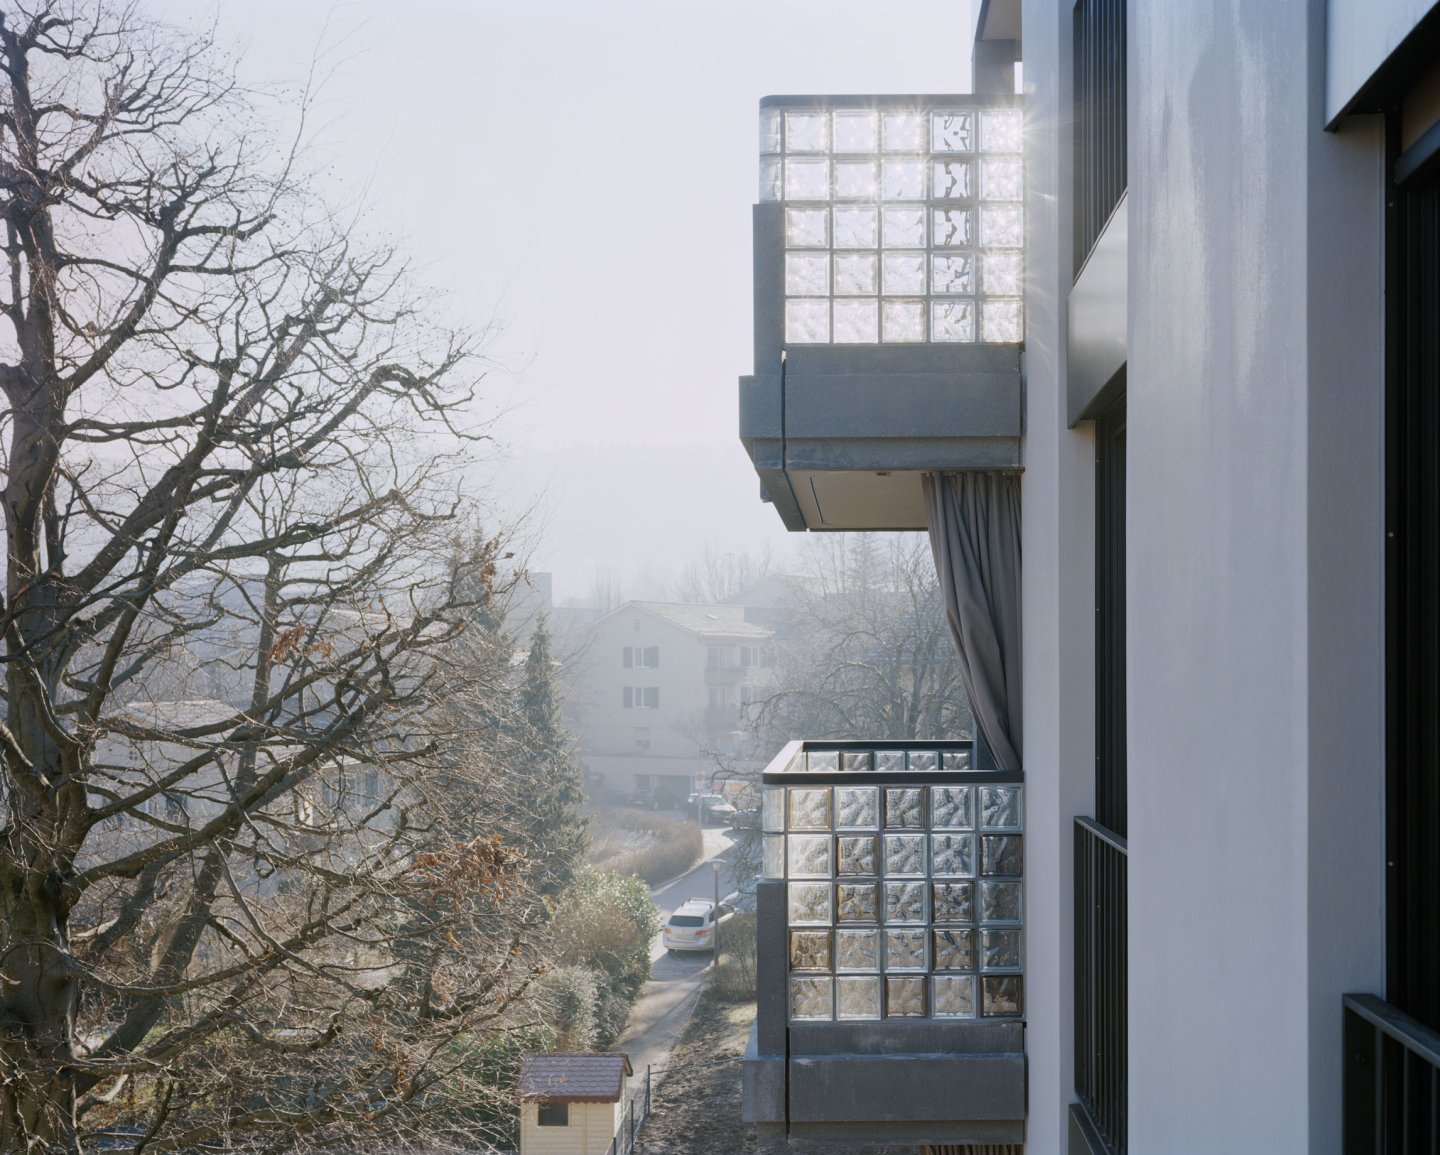 Blättler Dafflon - Wohnsiedlung Luegisland, Zürich Wettbewerb 1. Preis